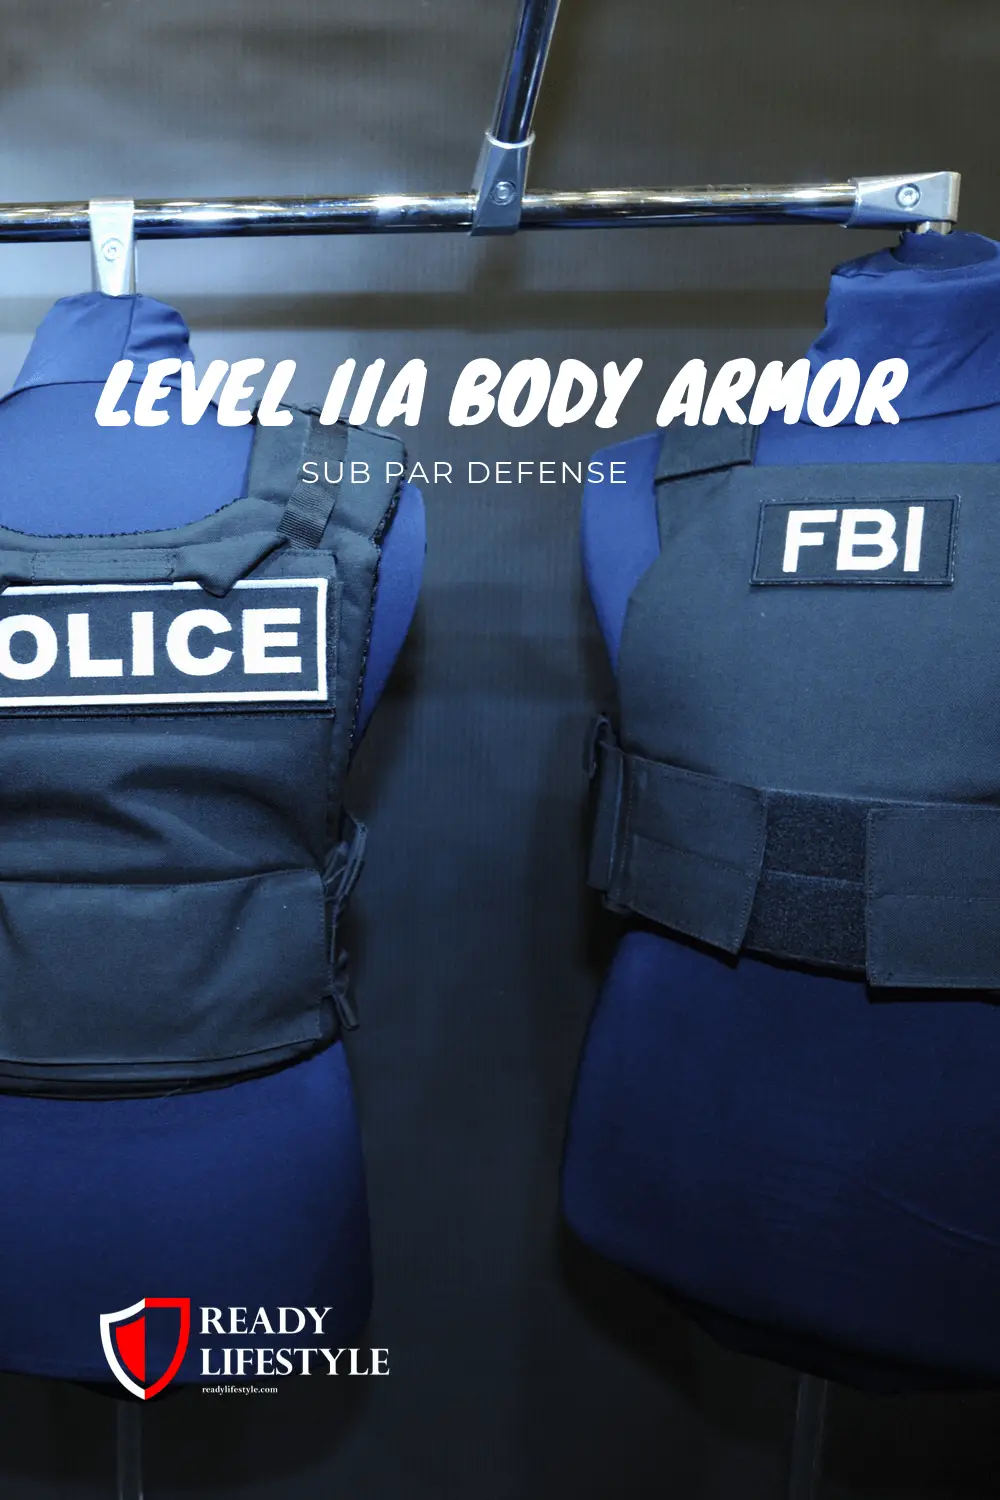 Level IIa Body Armor